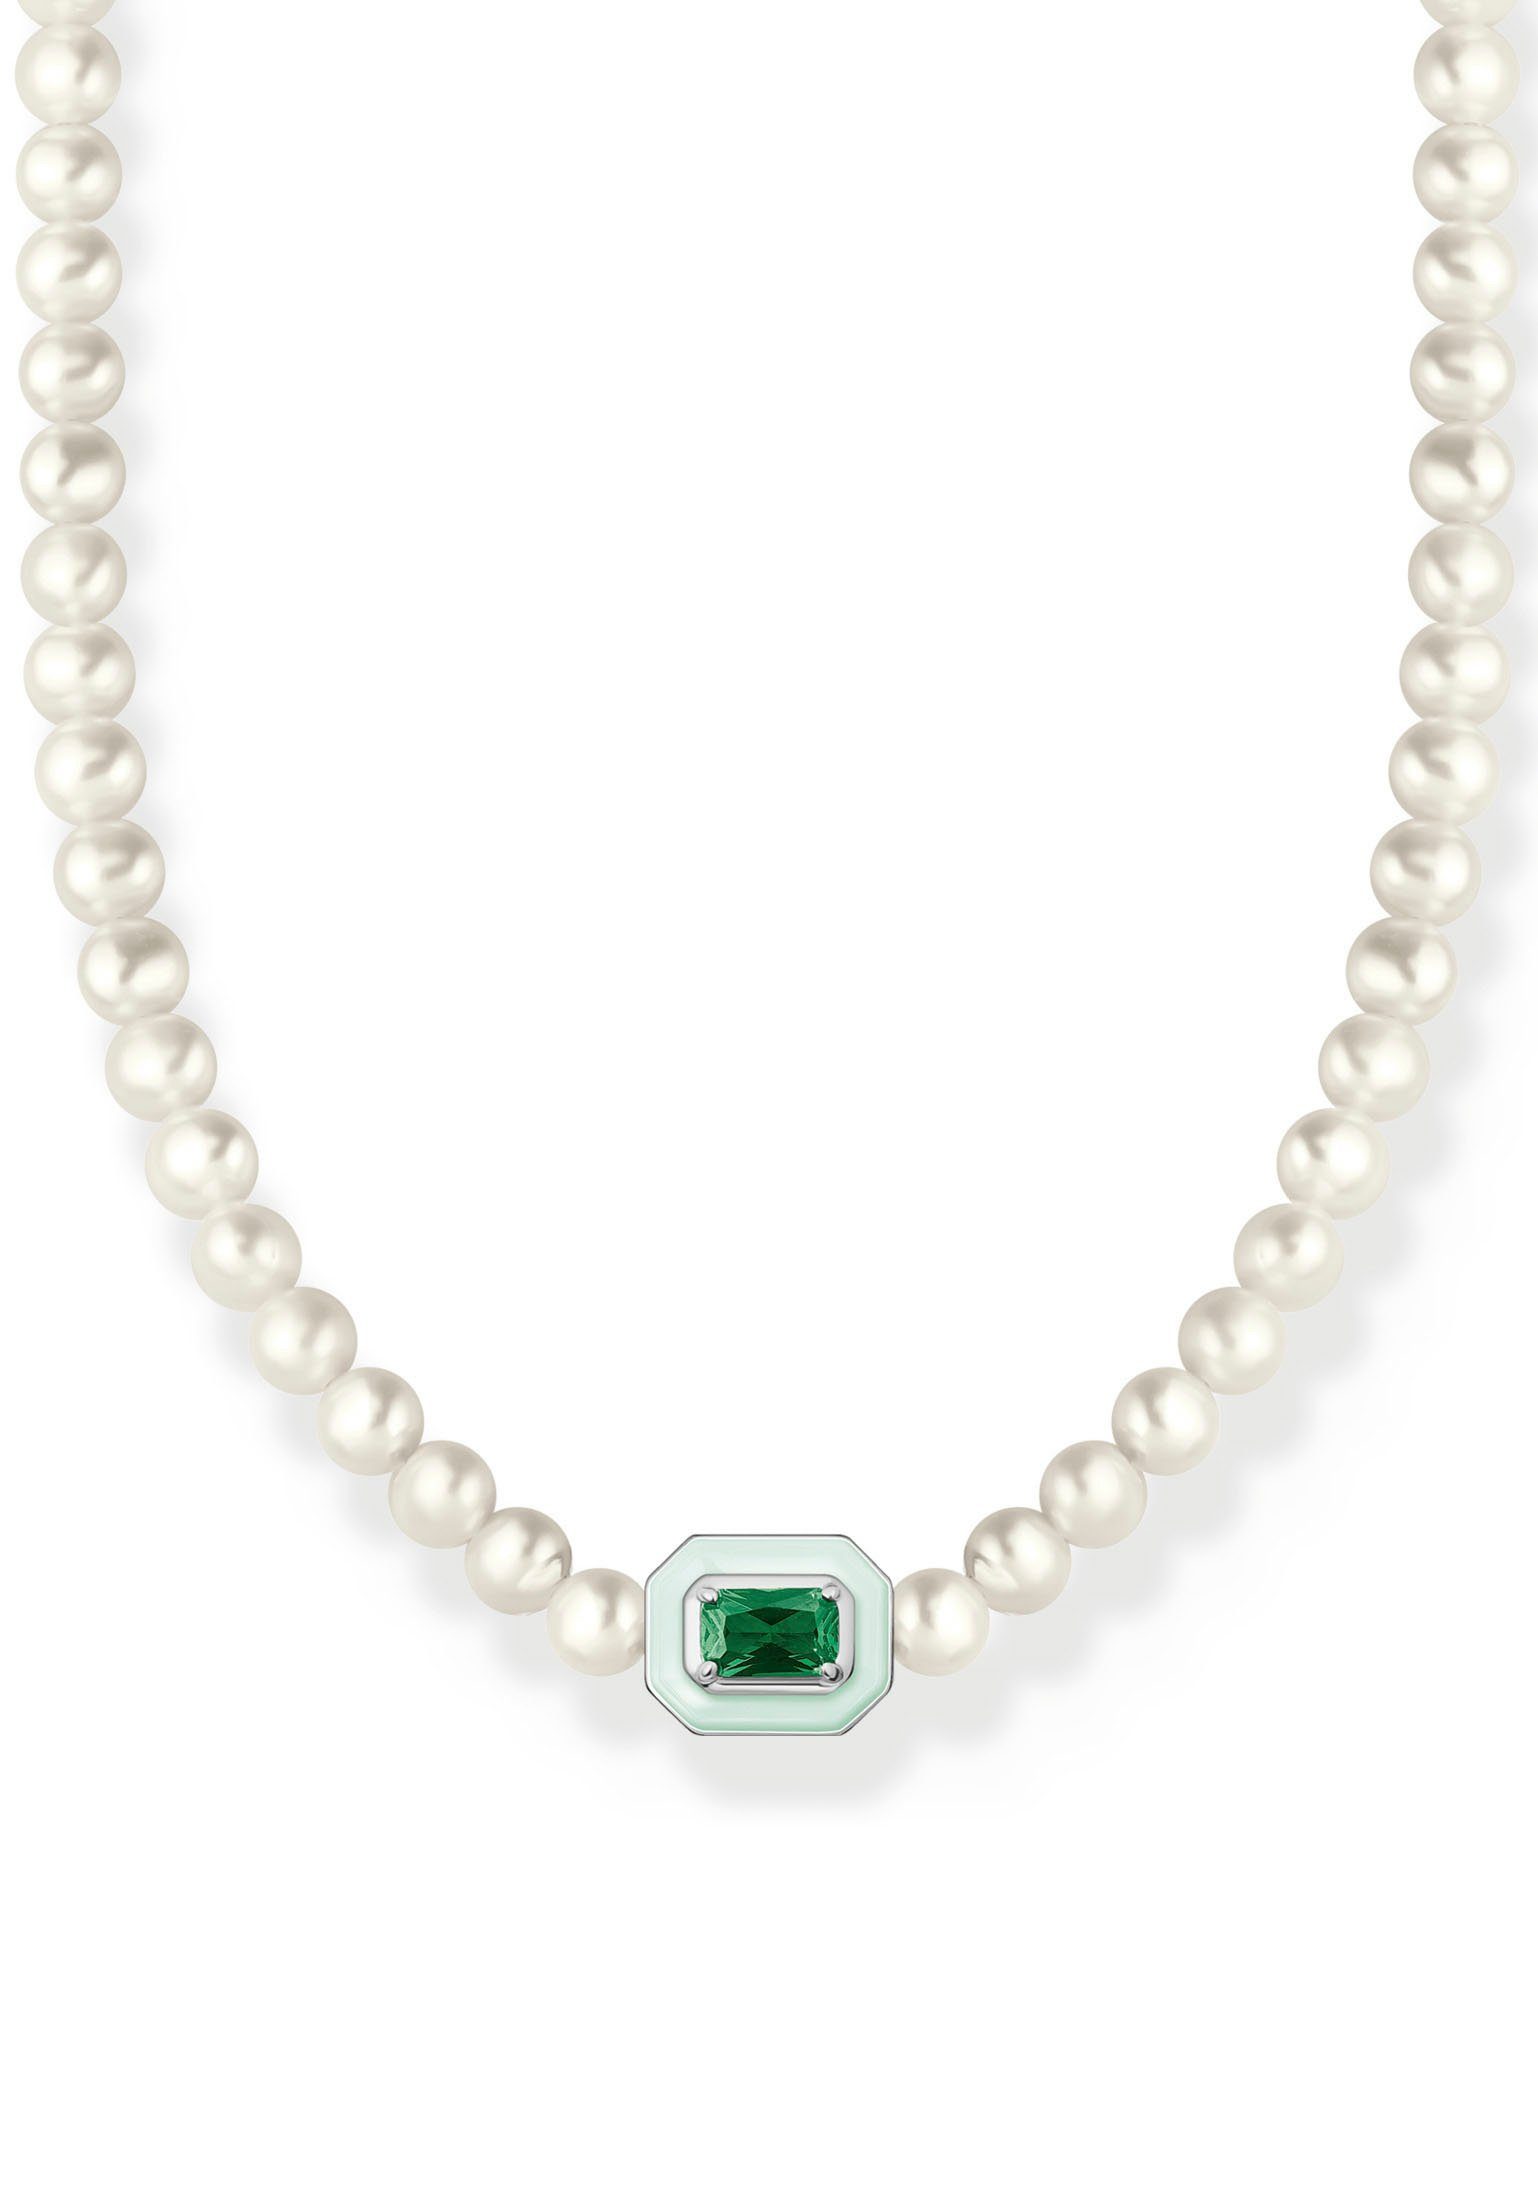 THOMAS SABO Choker Choker Perlen mit grünem Stein, KE2183-082-6-L42V, mit Glas-Keramik Stein - mit Süßwasserzuchtperle | Silberketten